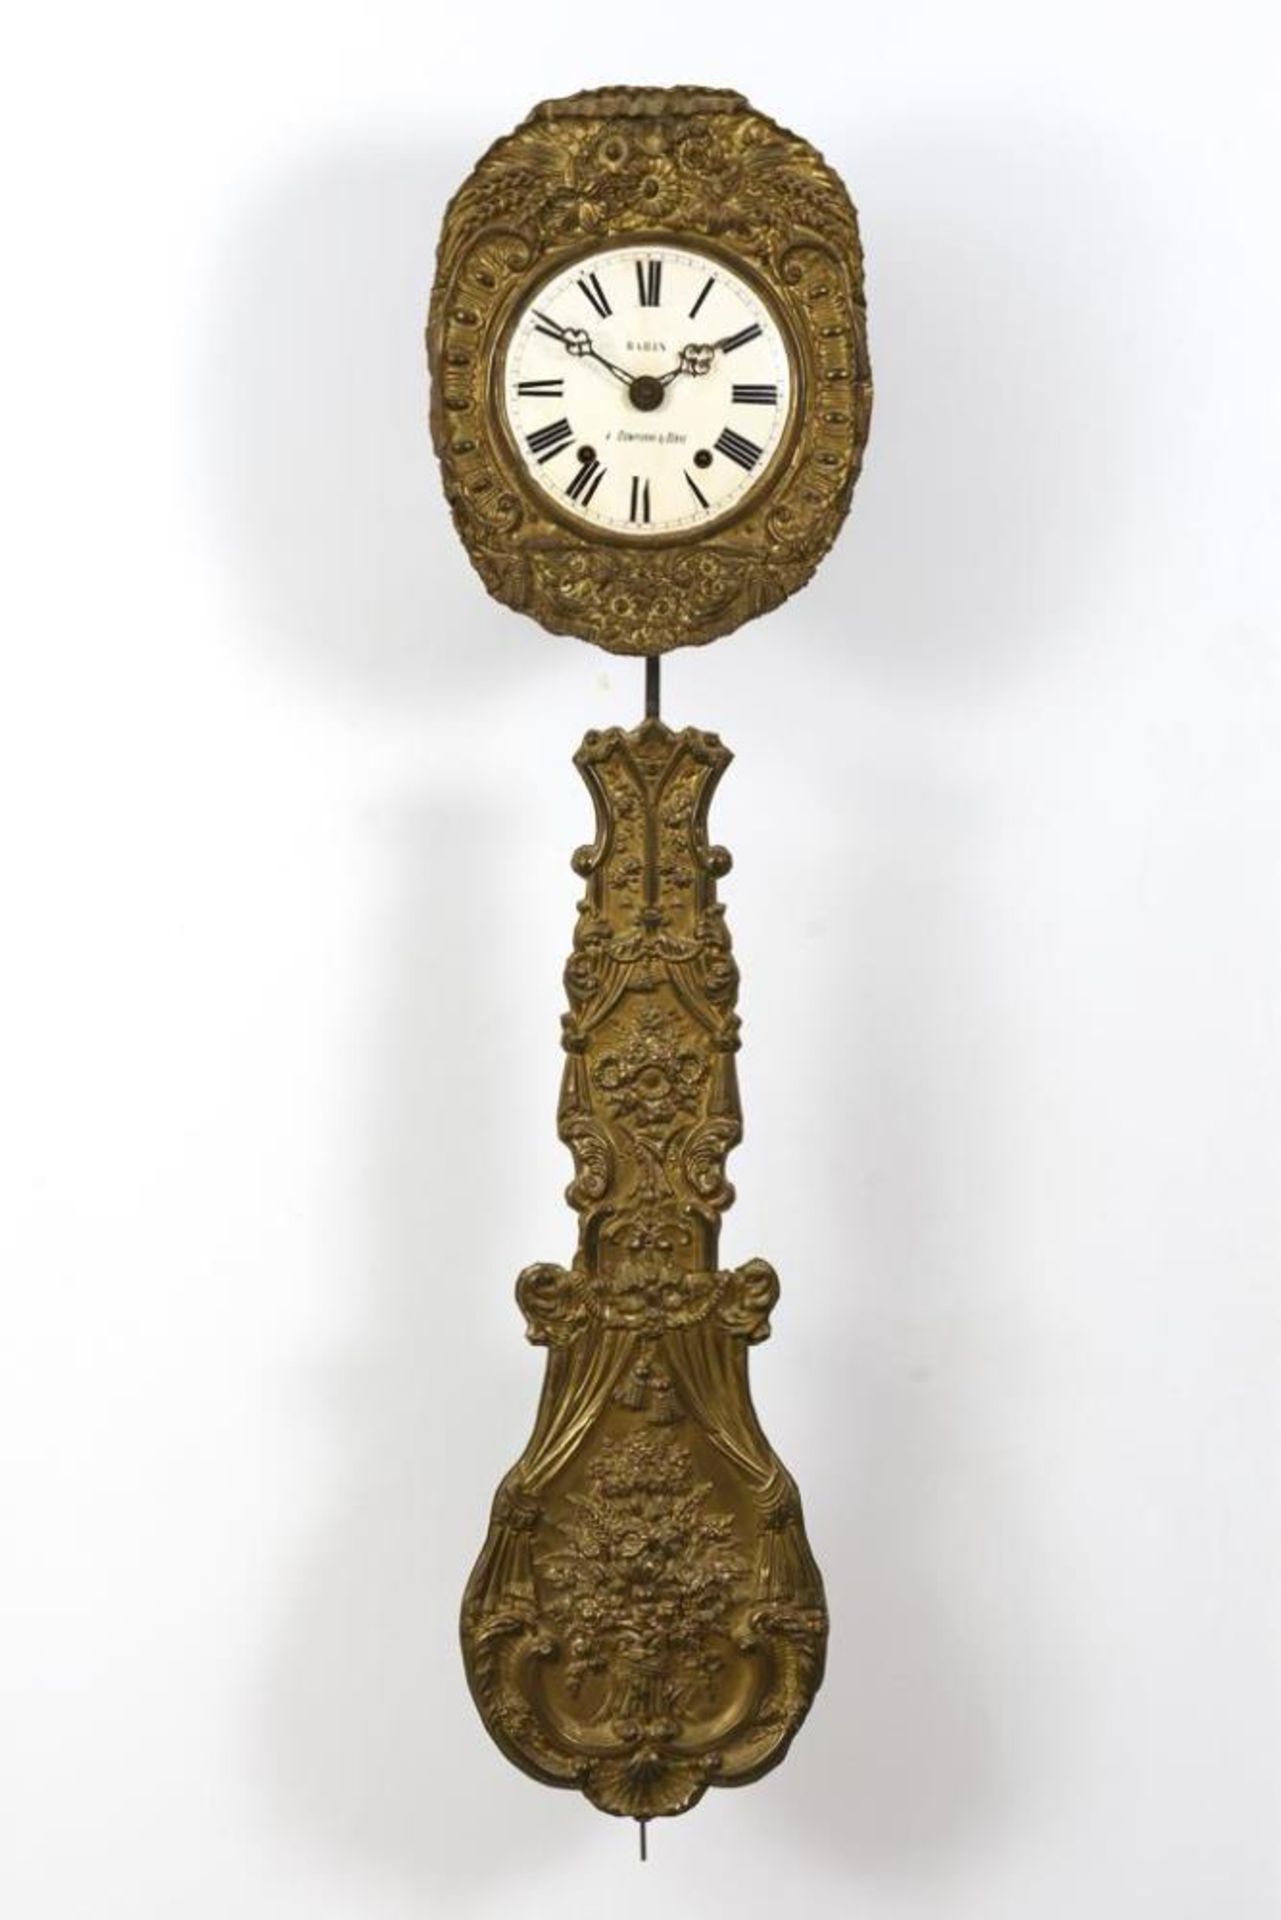 Comtoise-Uhr mit Prunkpendel